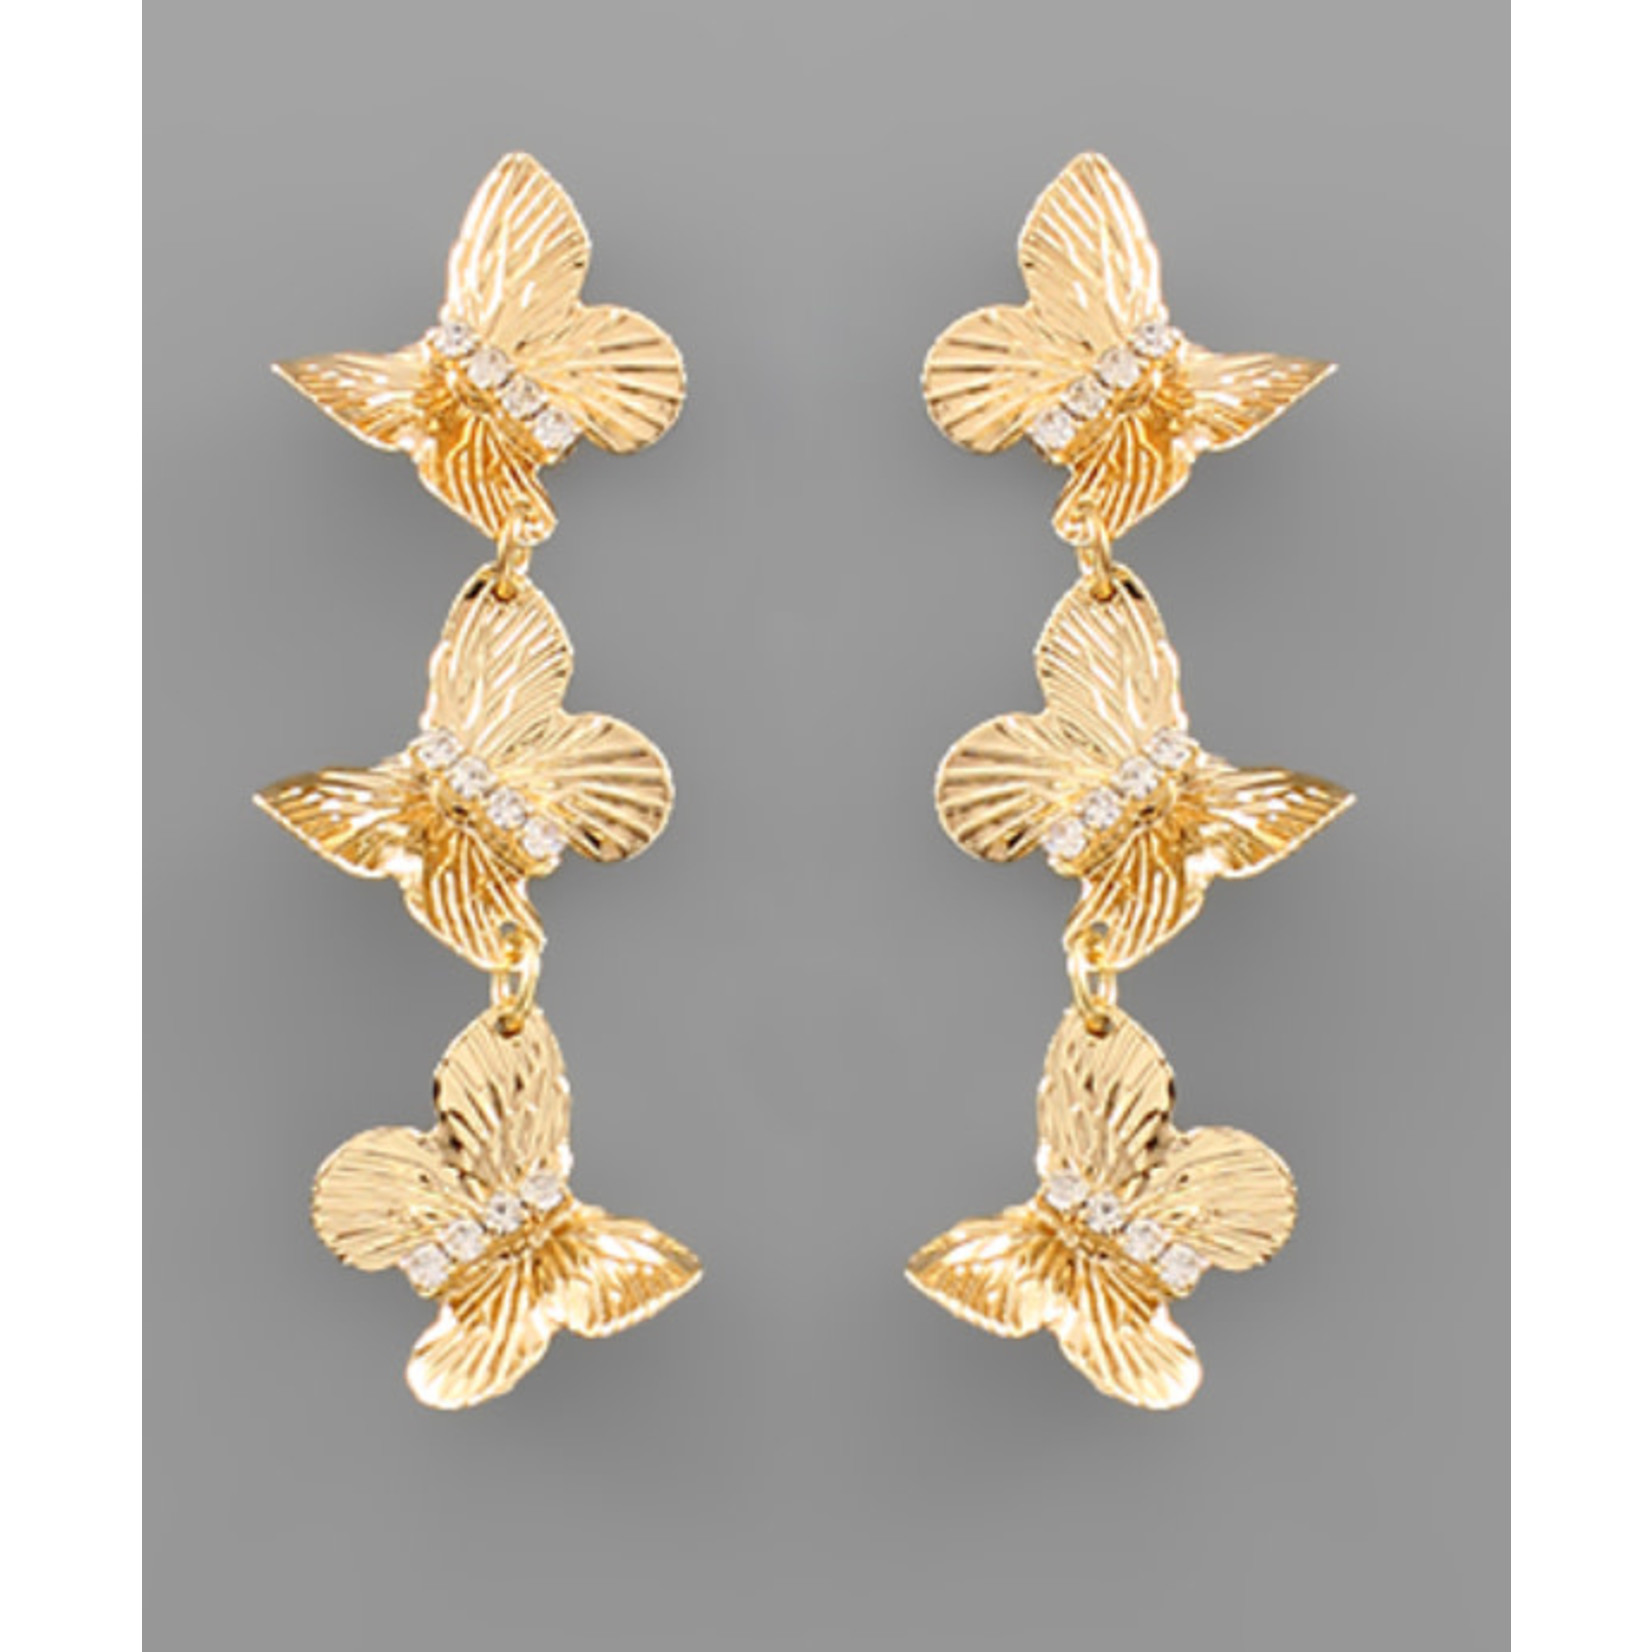 3 Butterfly Earrings Gold